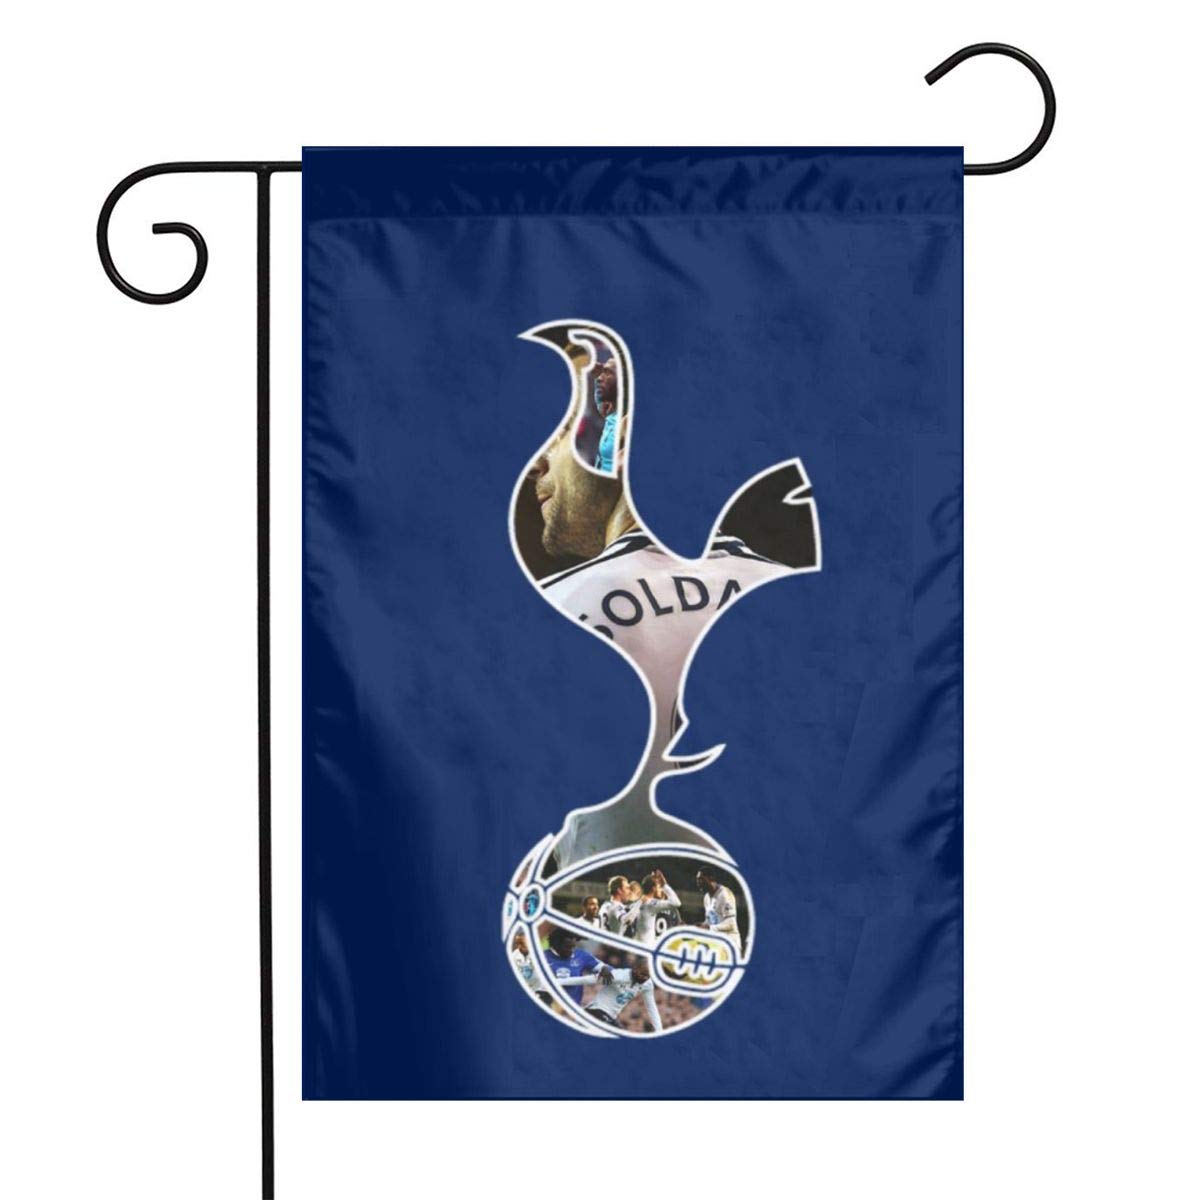 Tottenham Hotspur F.c. - HD Wallpaper 